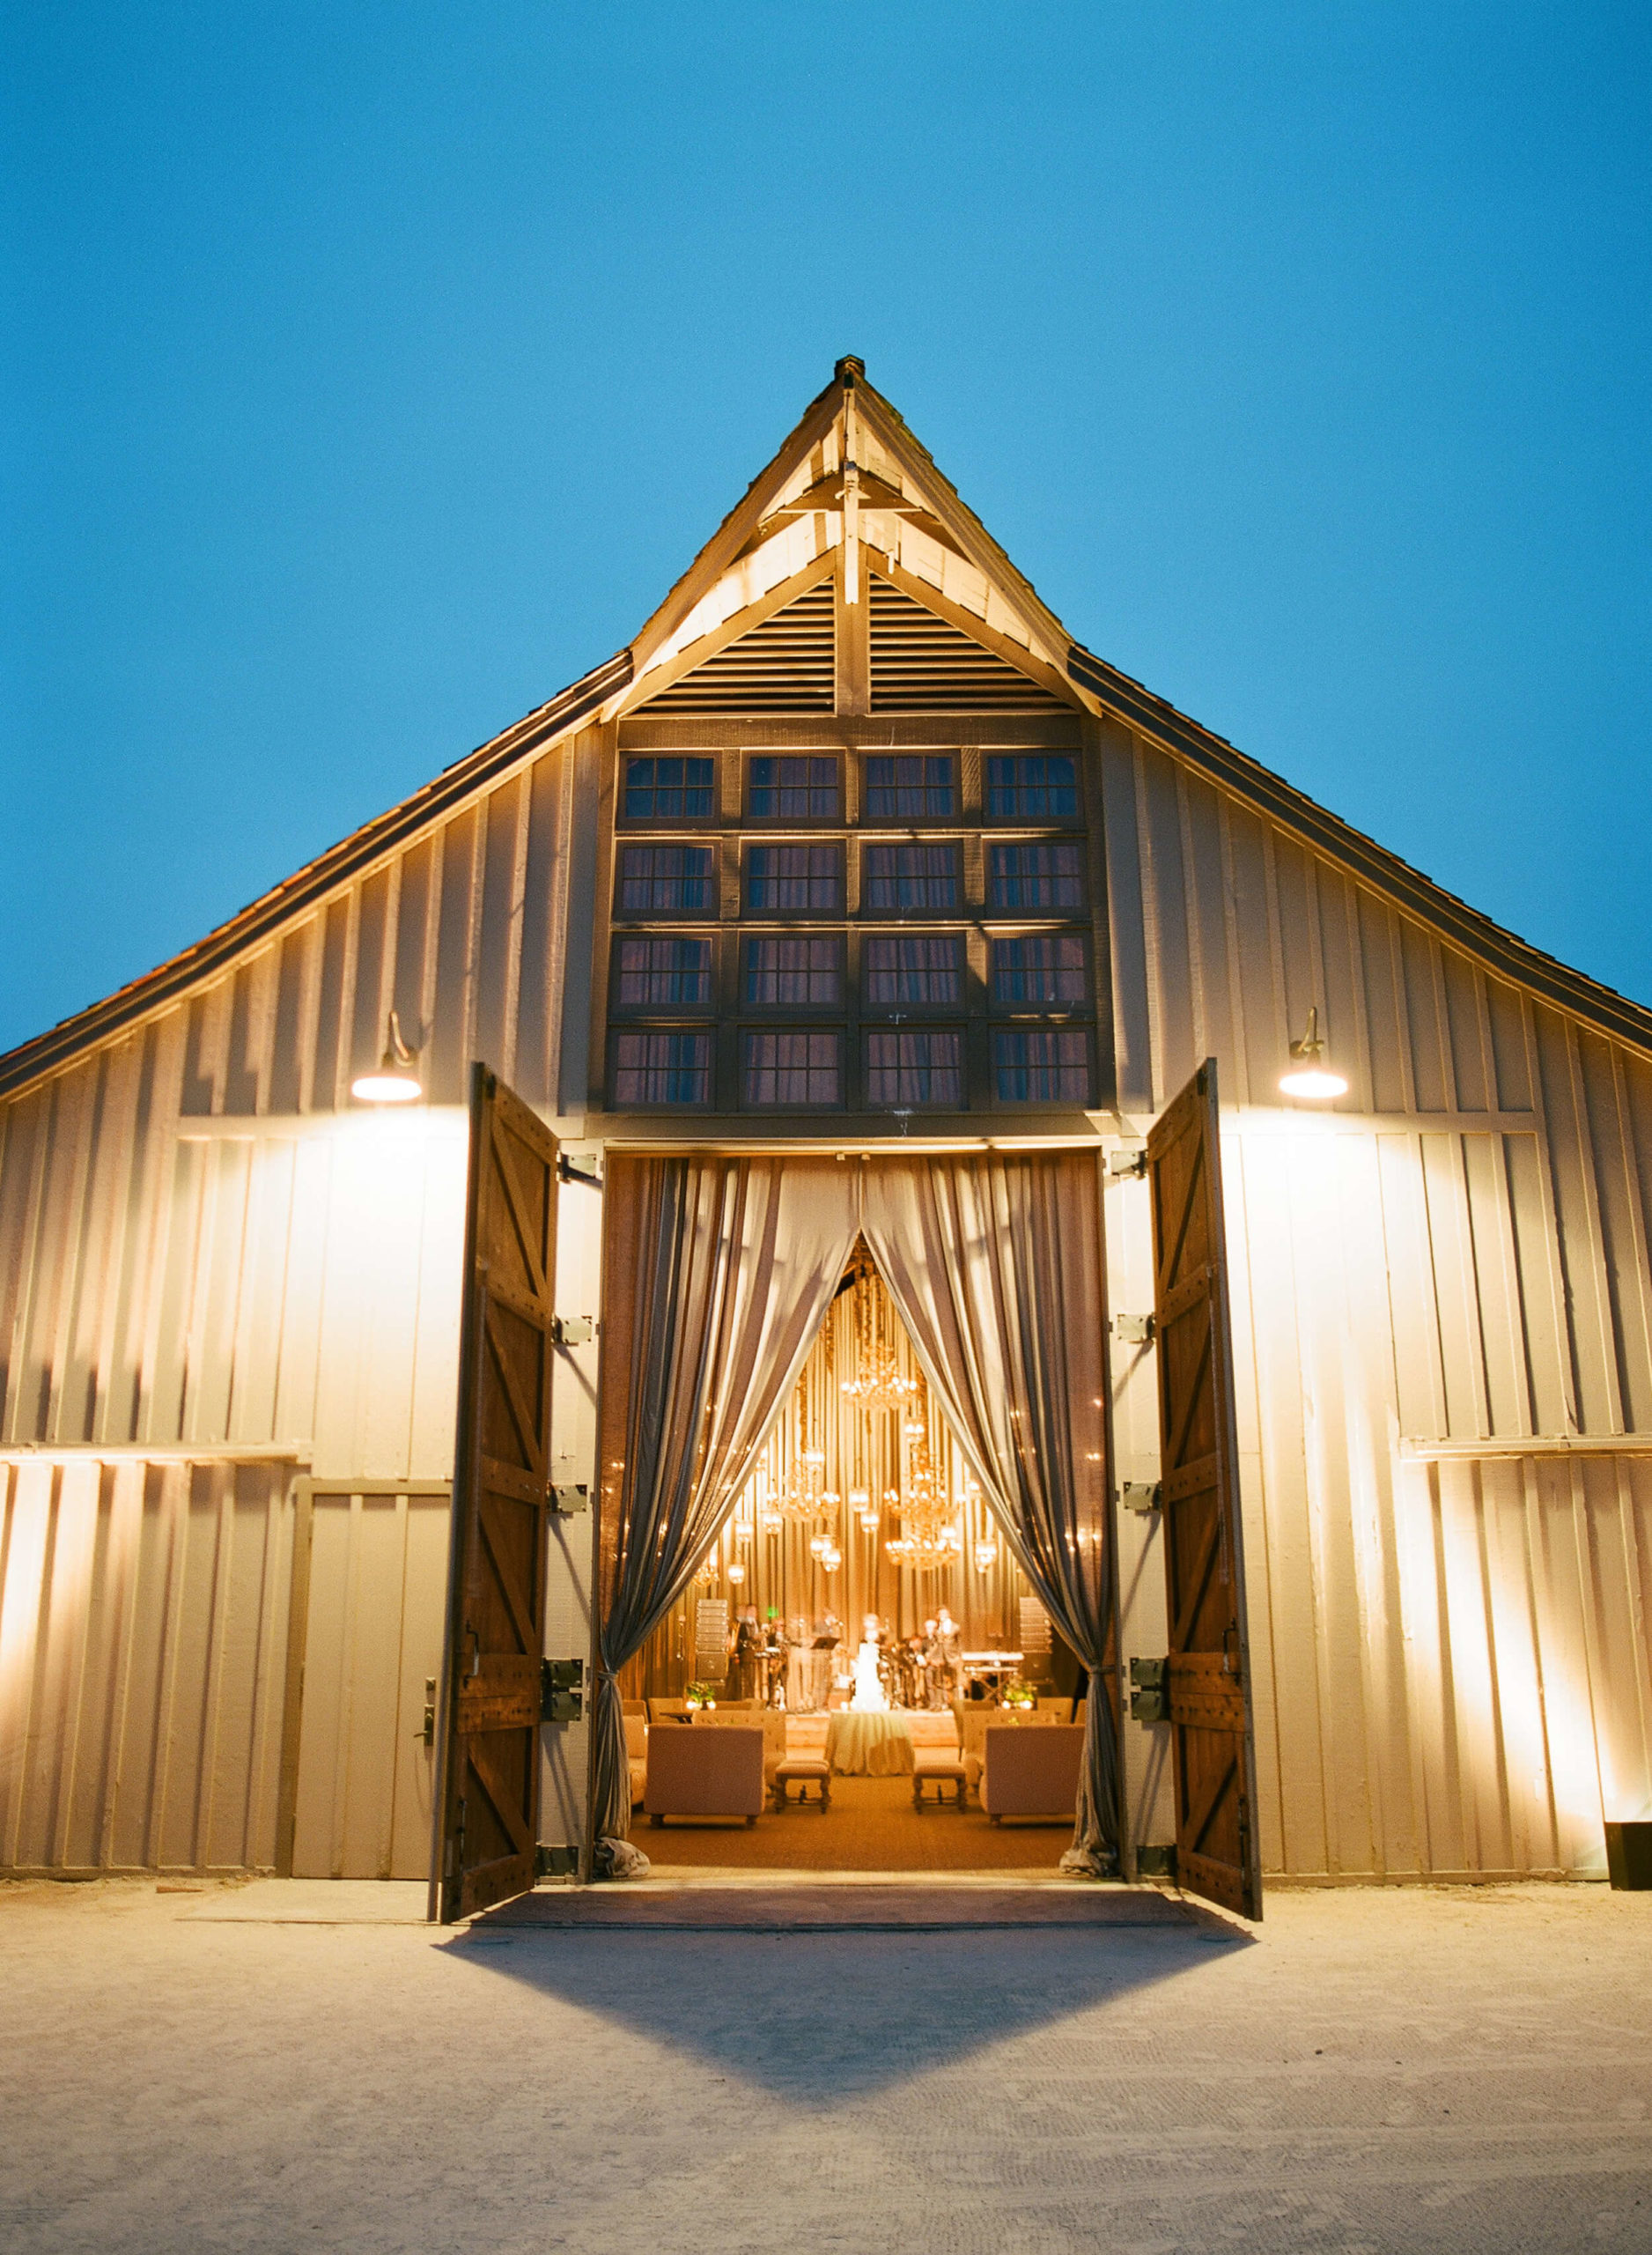 wedding reception barn